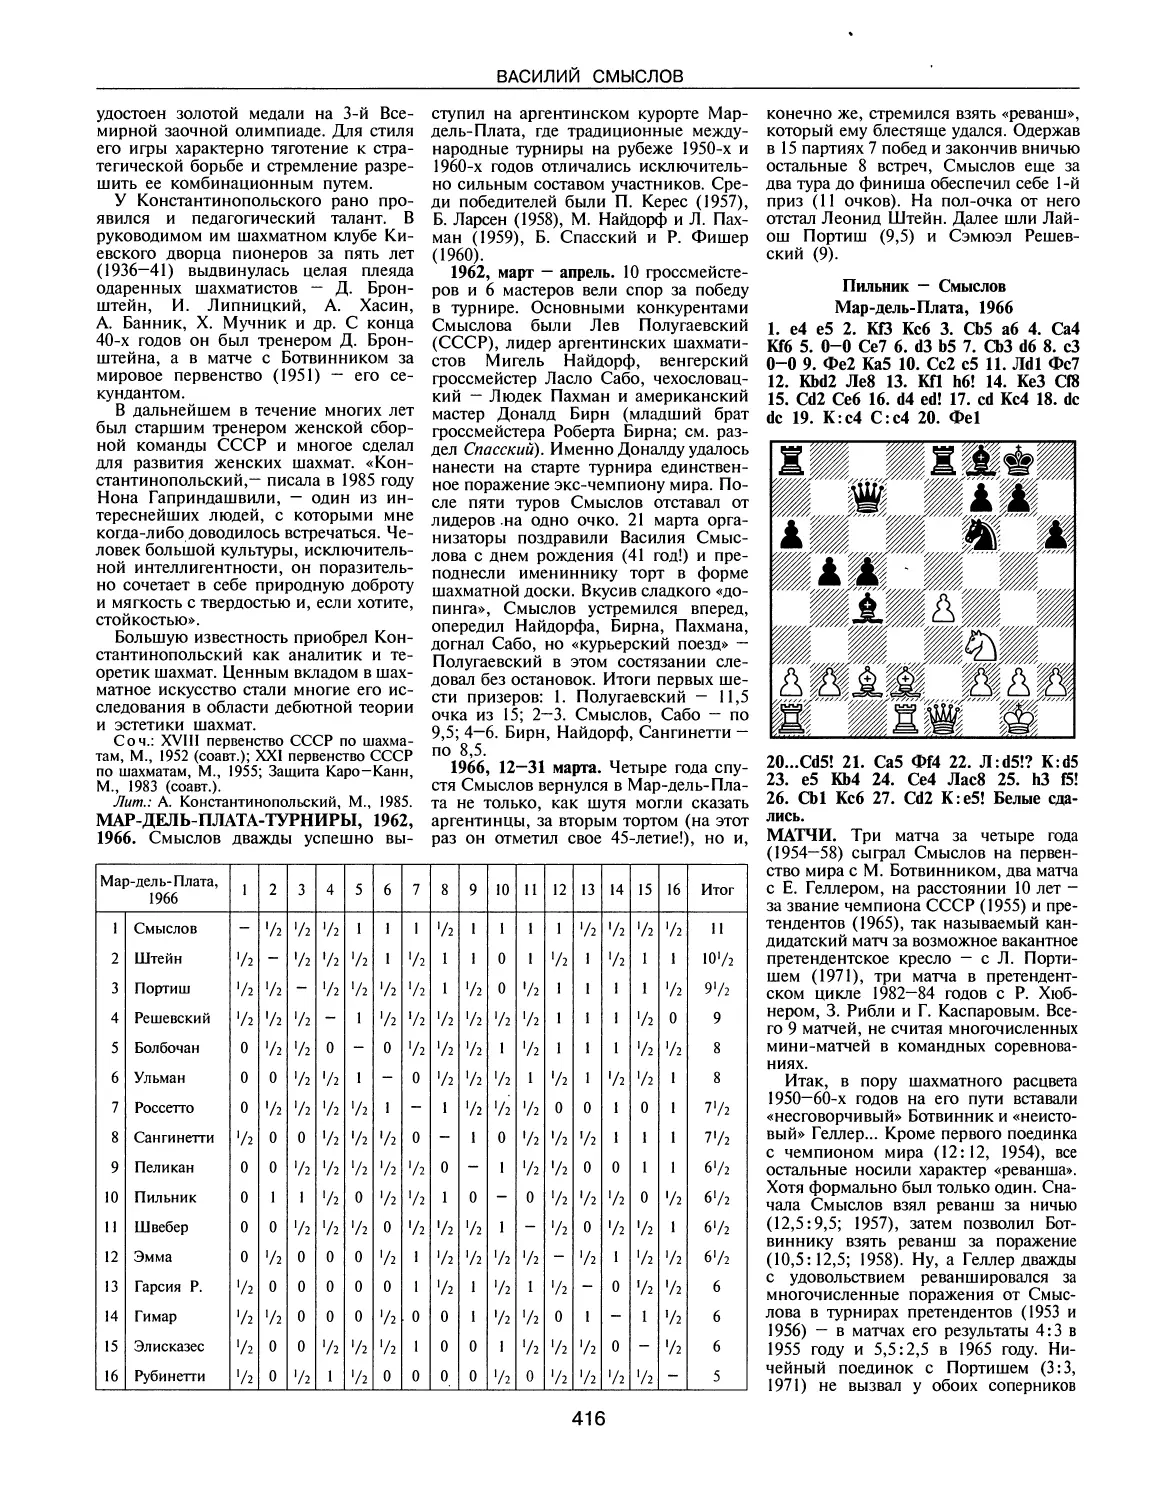 Мар-дель-Плата-турниры, 1962, 1966
Матчи